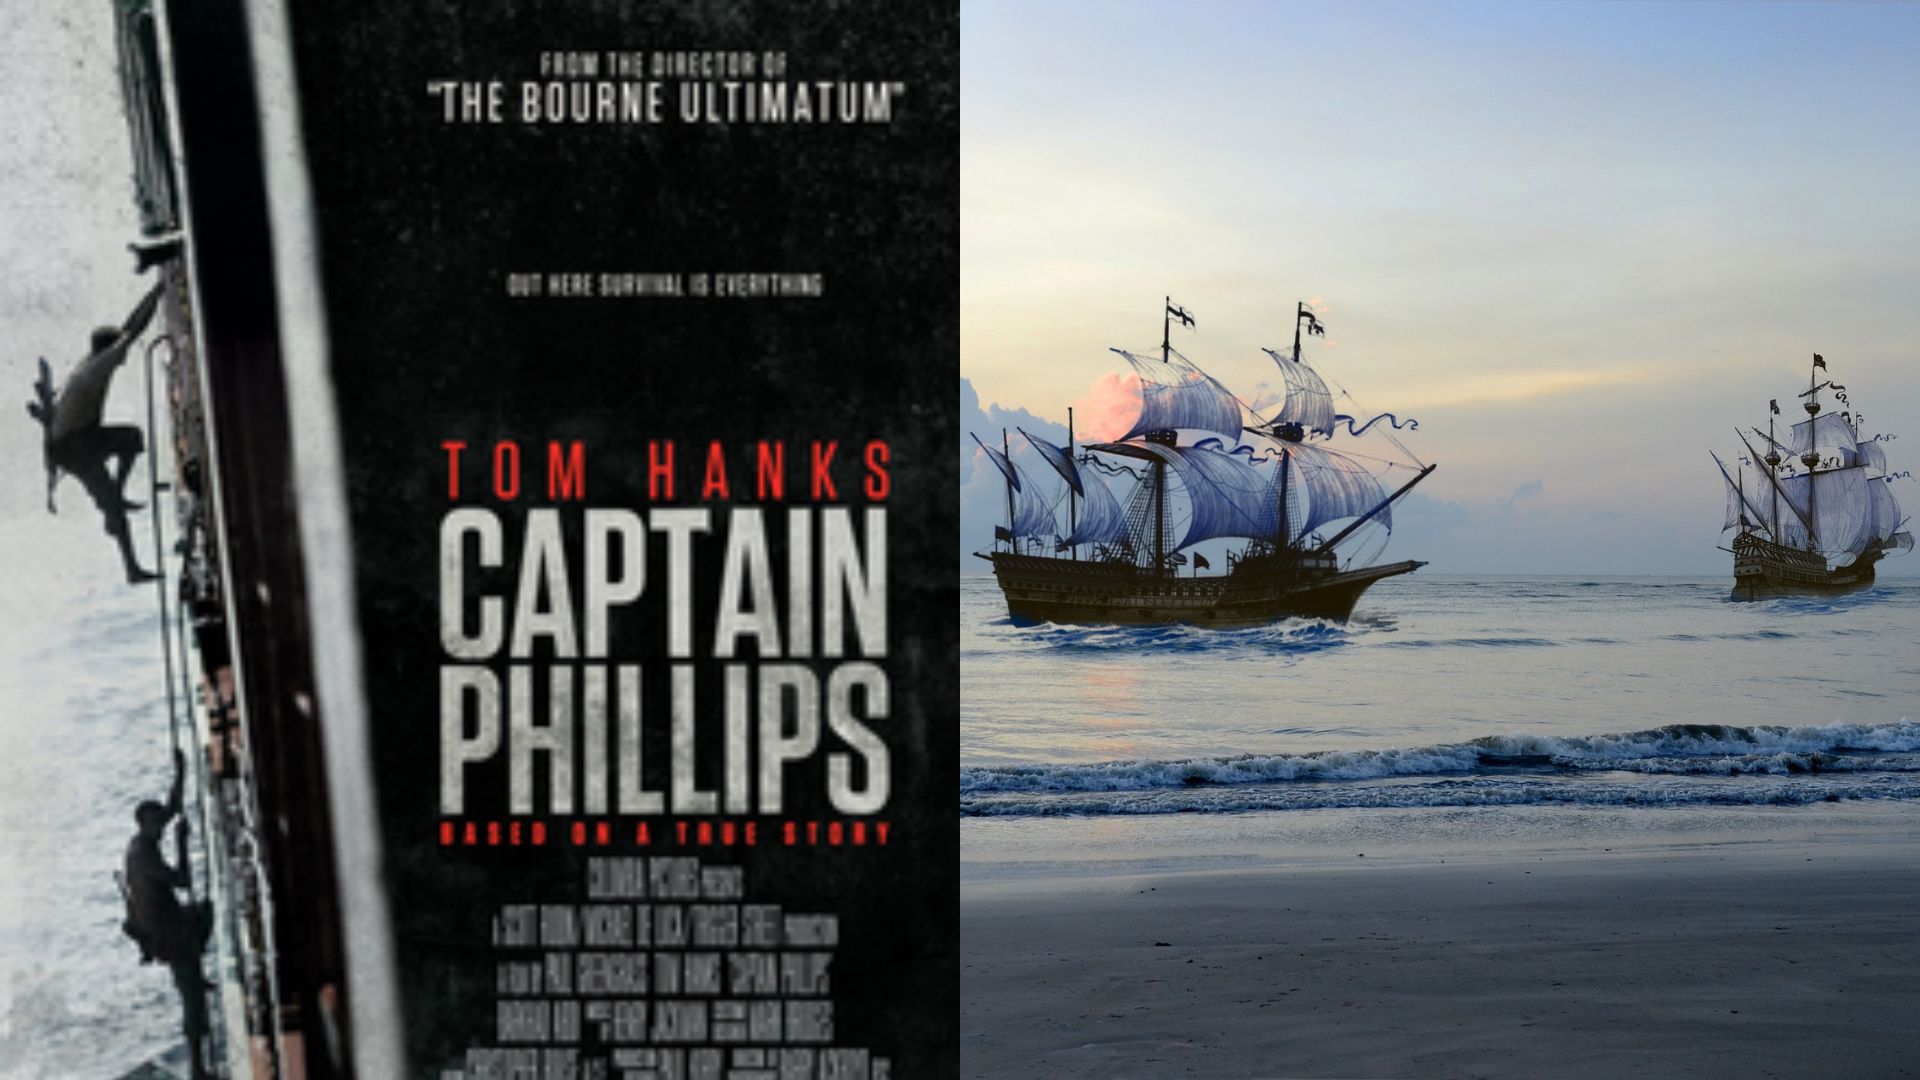 Film Captain Phillips Kisah Nyata Kapal yang Dijarah Bajak Laut Somalia, intip Sinopsisnya Disini